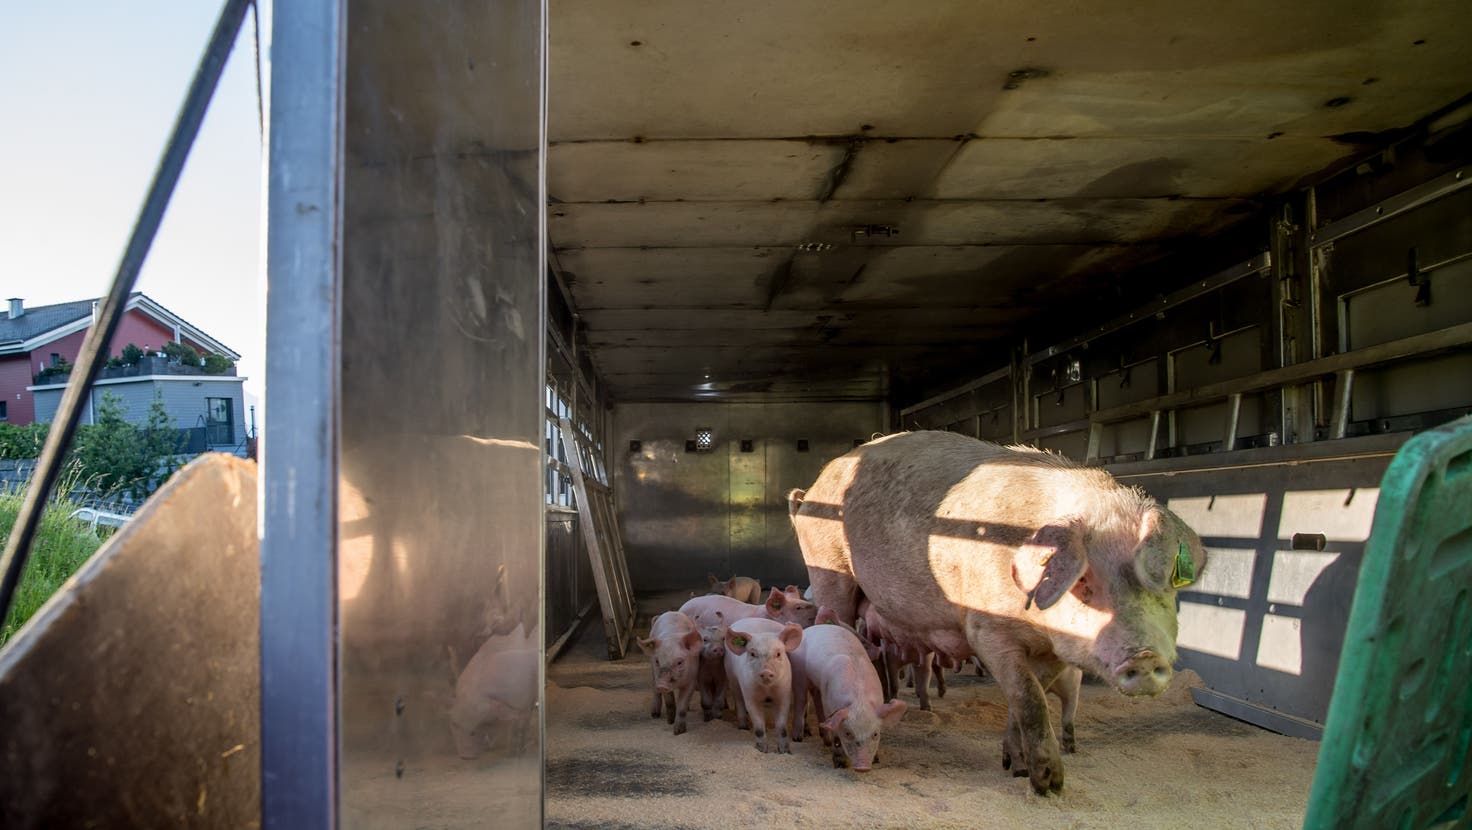 Der Kanton Luzern zählt mehr Schweine als Menschen, was eine hohe Umweltbelastung darstellt. Der Kanton will den Tierbestand darum mittelfristig senken. (Symbolbild: Nadia Schärli)